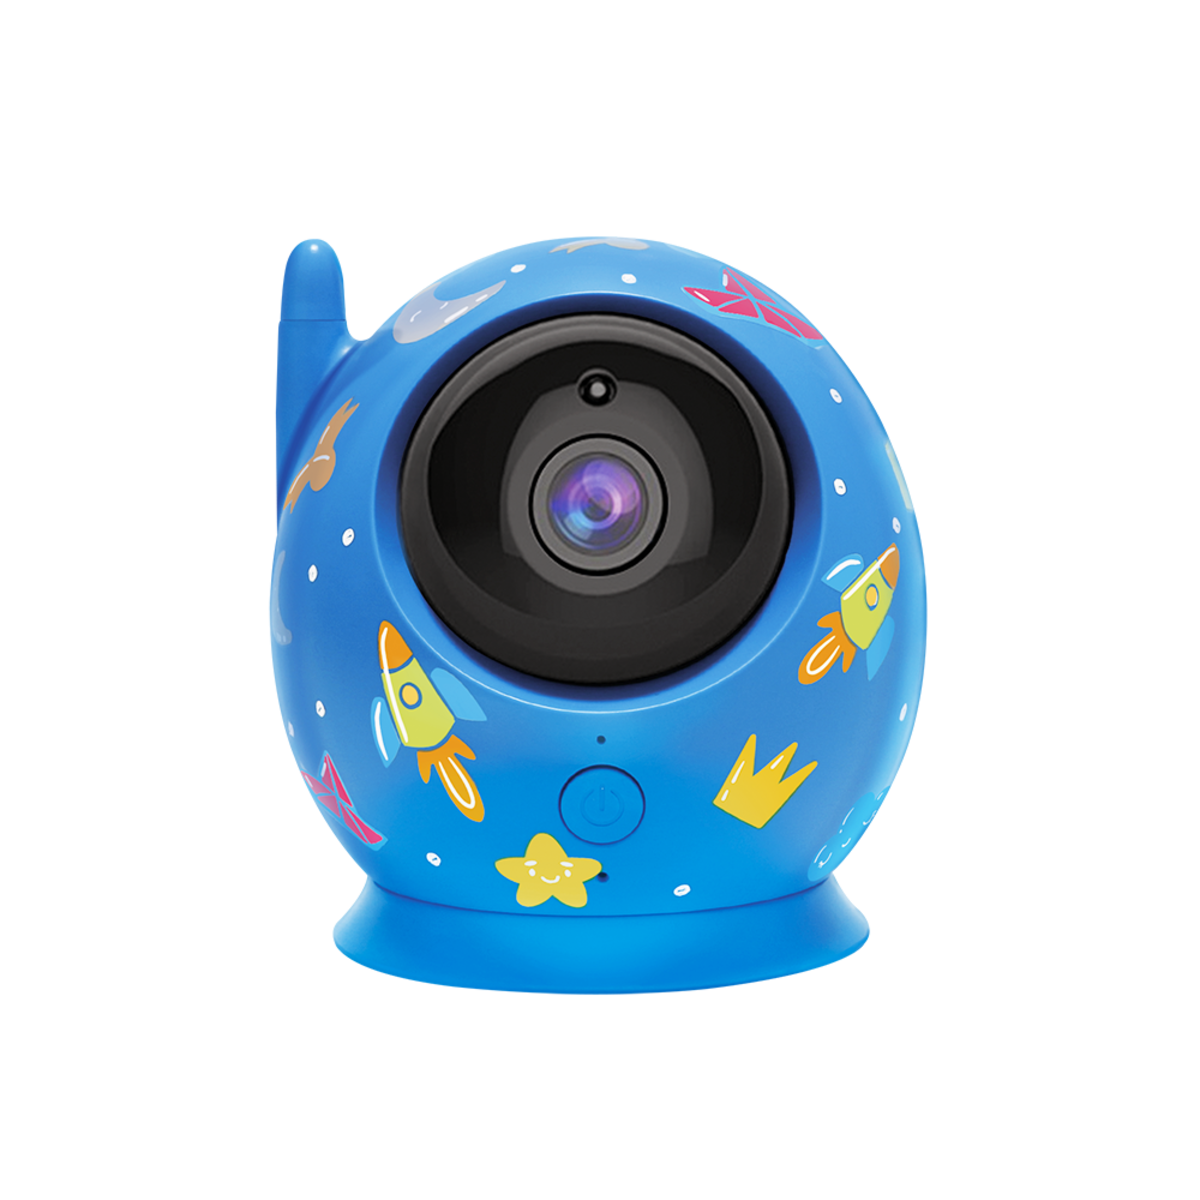 Baby Lite mit Kamera SOYMOMO Monitor Babyphone